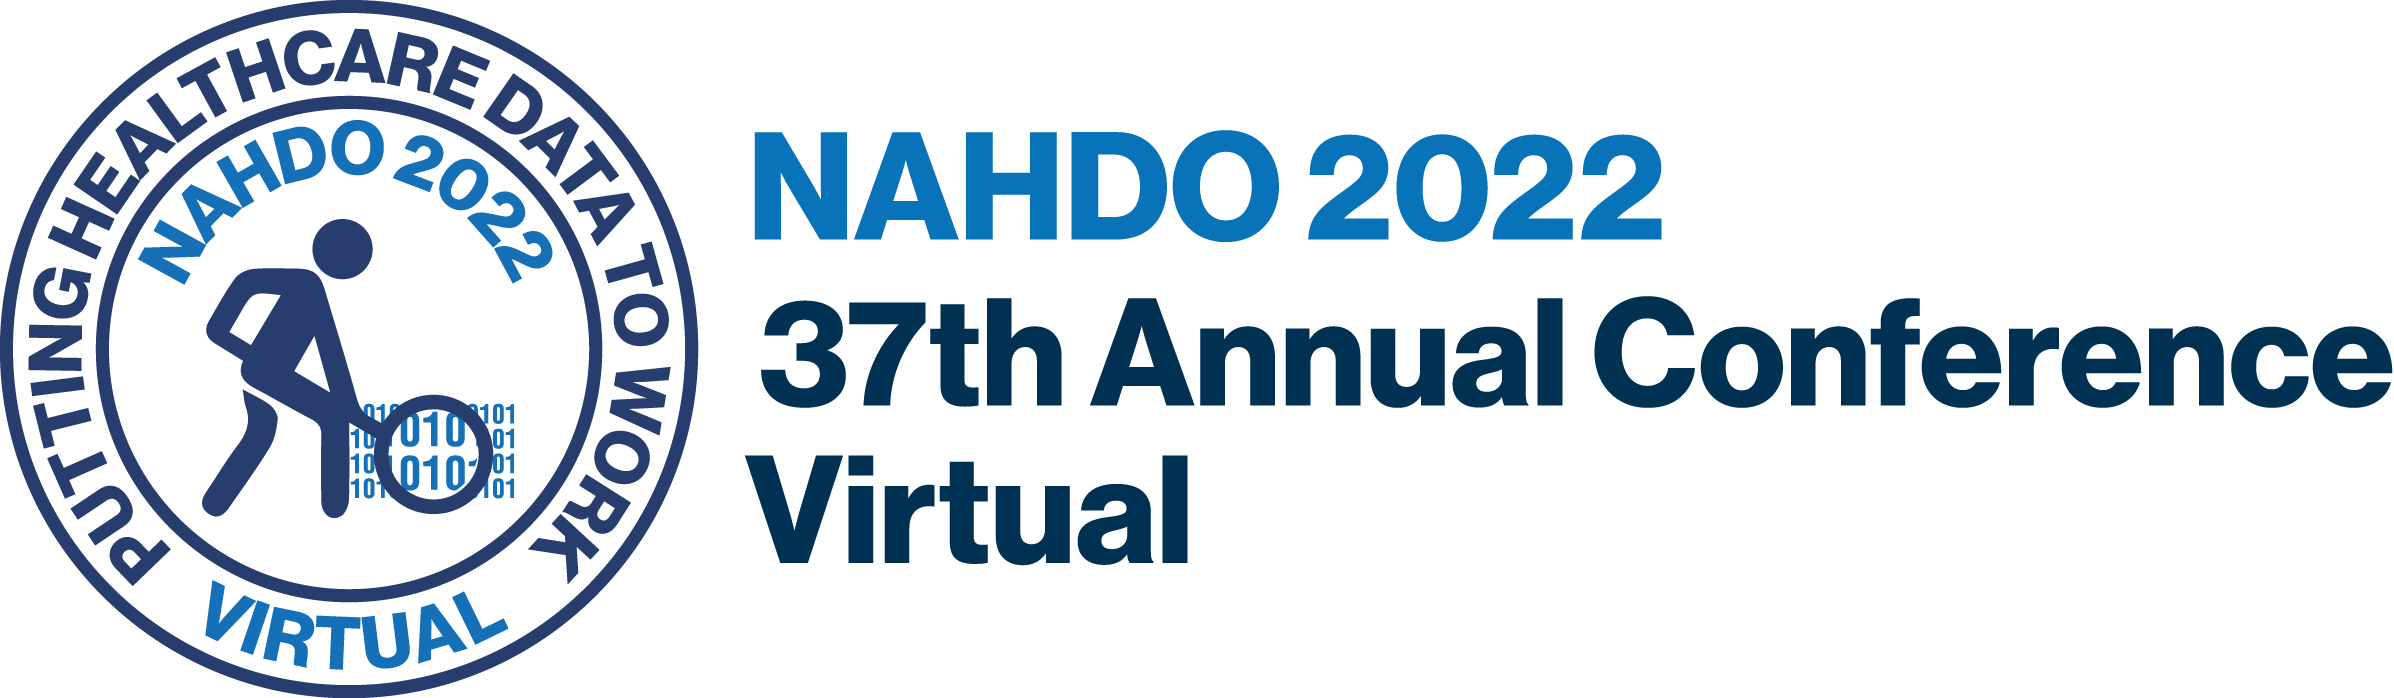 NAHDO 2022 Conference Logo